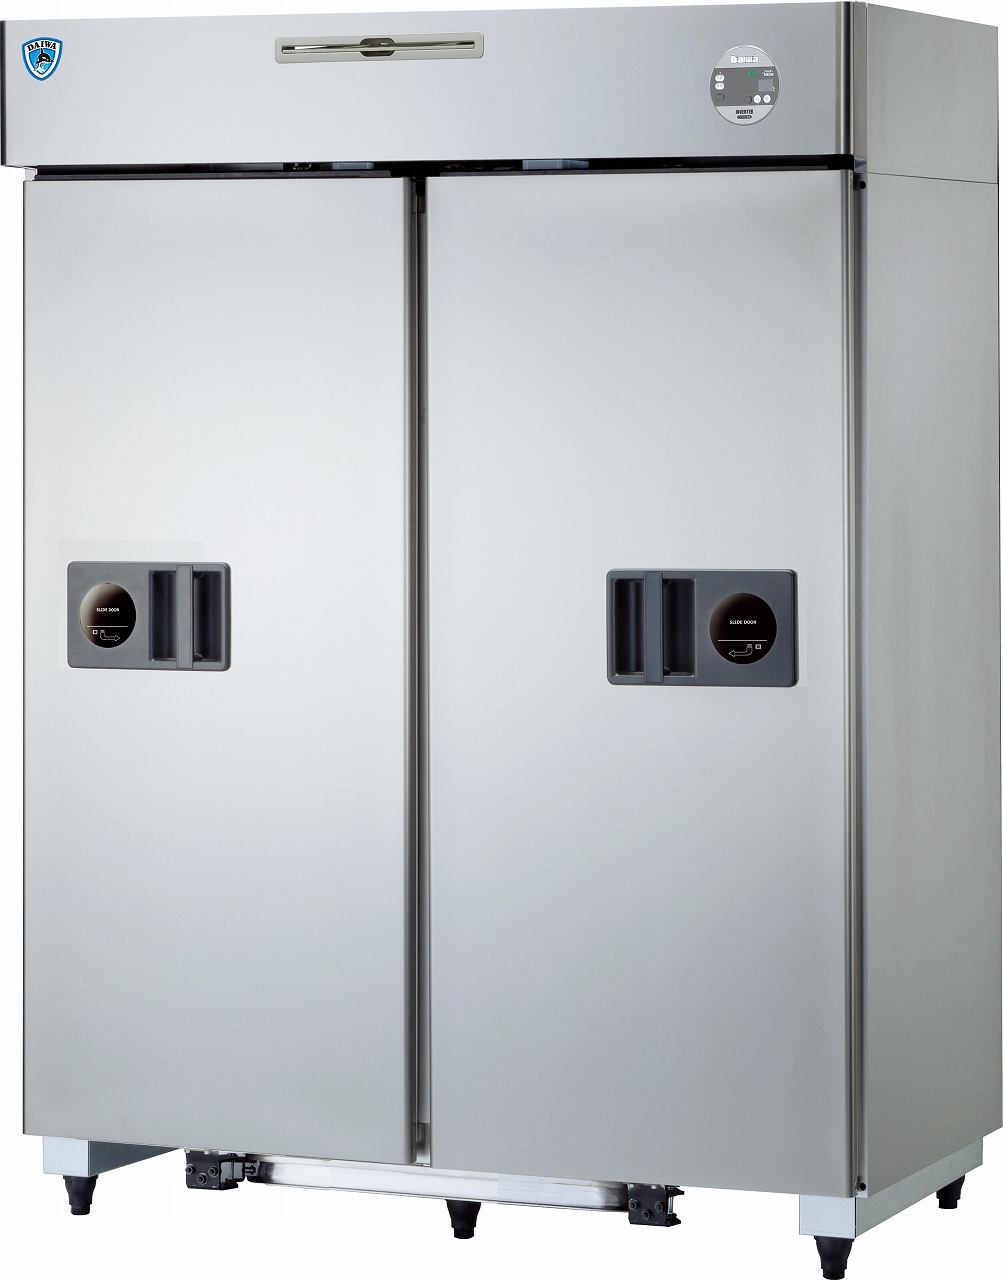 インバータ制御スライド扉冷凍冷蔵庫 エコ蔵くん - 大和冷機工業